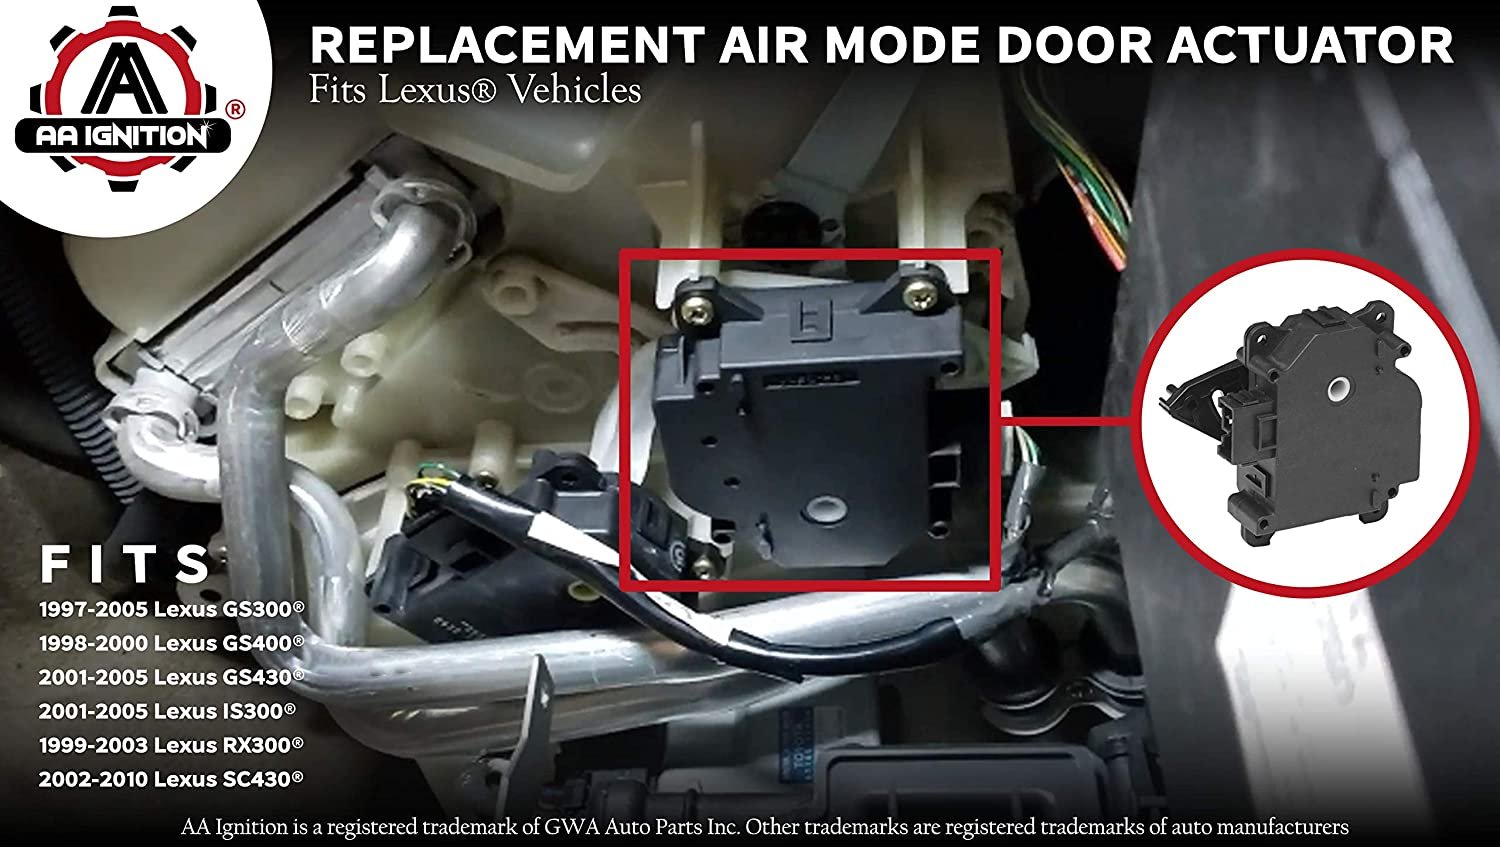 Mode HVAC Air Door Actuator - Compatible with Lexus Vehicles - 97-05 GS300, GS400, GS430, IS300, RX300, 2002-2010 SC430 - Replaces 8710630371, 604-917, 87106-30371, 604917 - Blend Heater Servo Unit